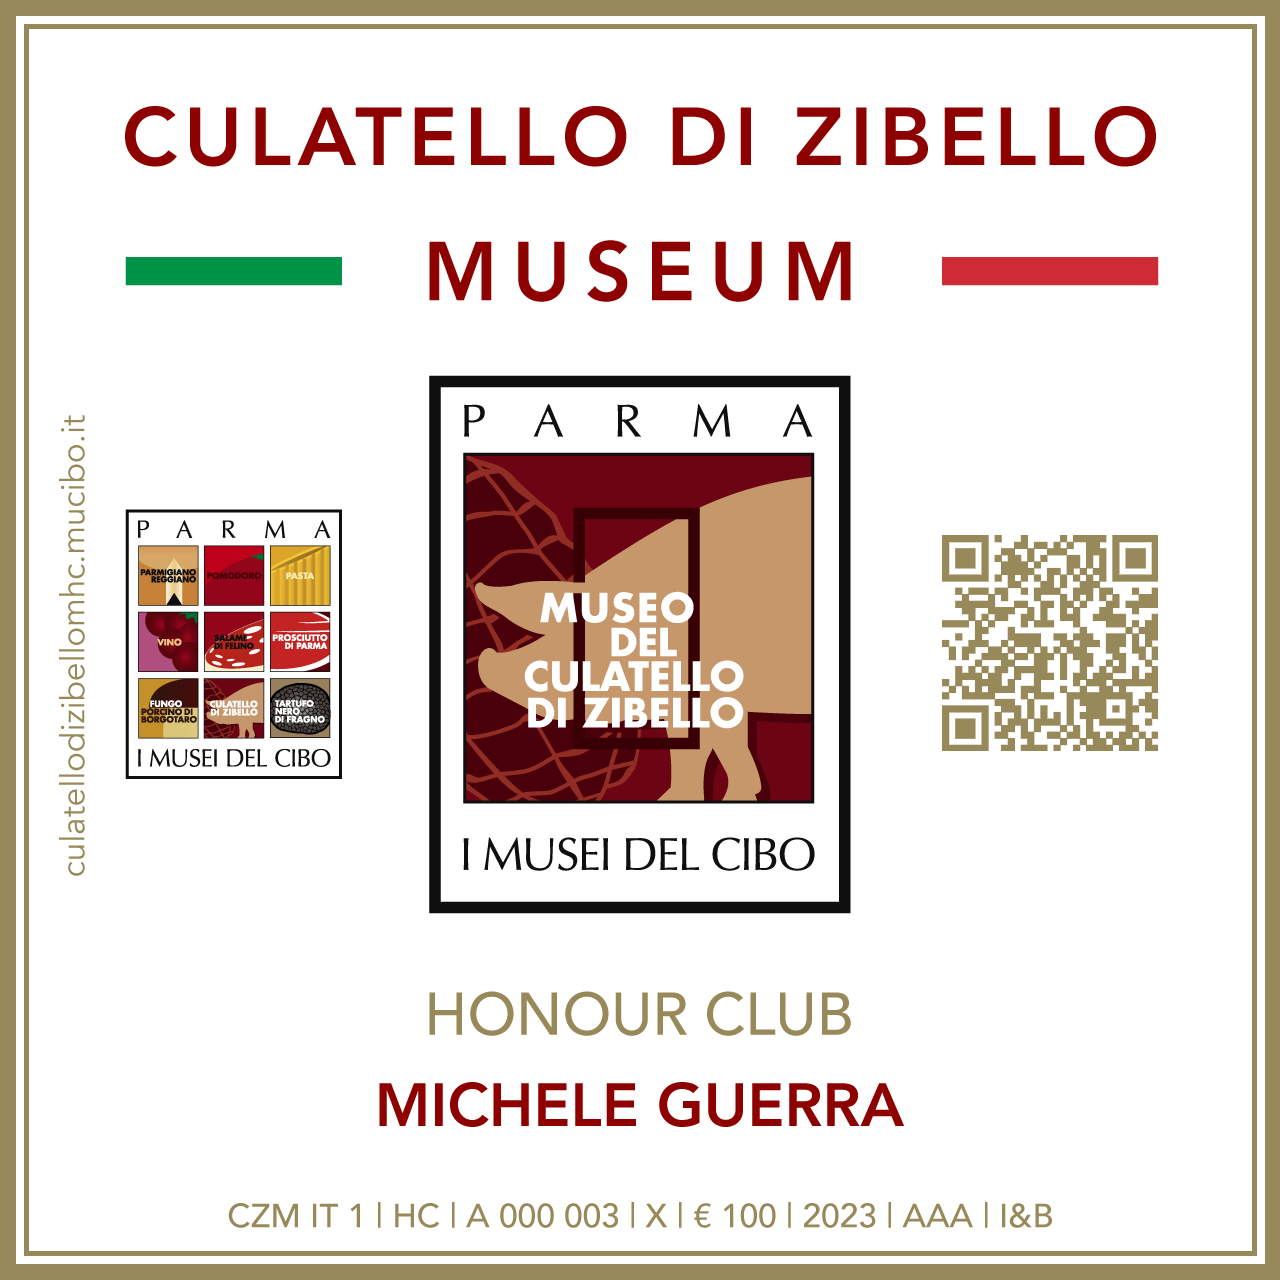 Culatello di Zibello Museum Honour Club - Token Id A 000 003 - MICHELE GUERRA